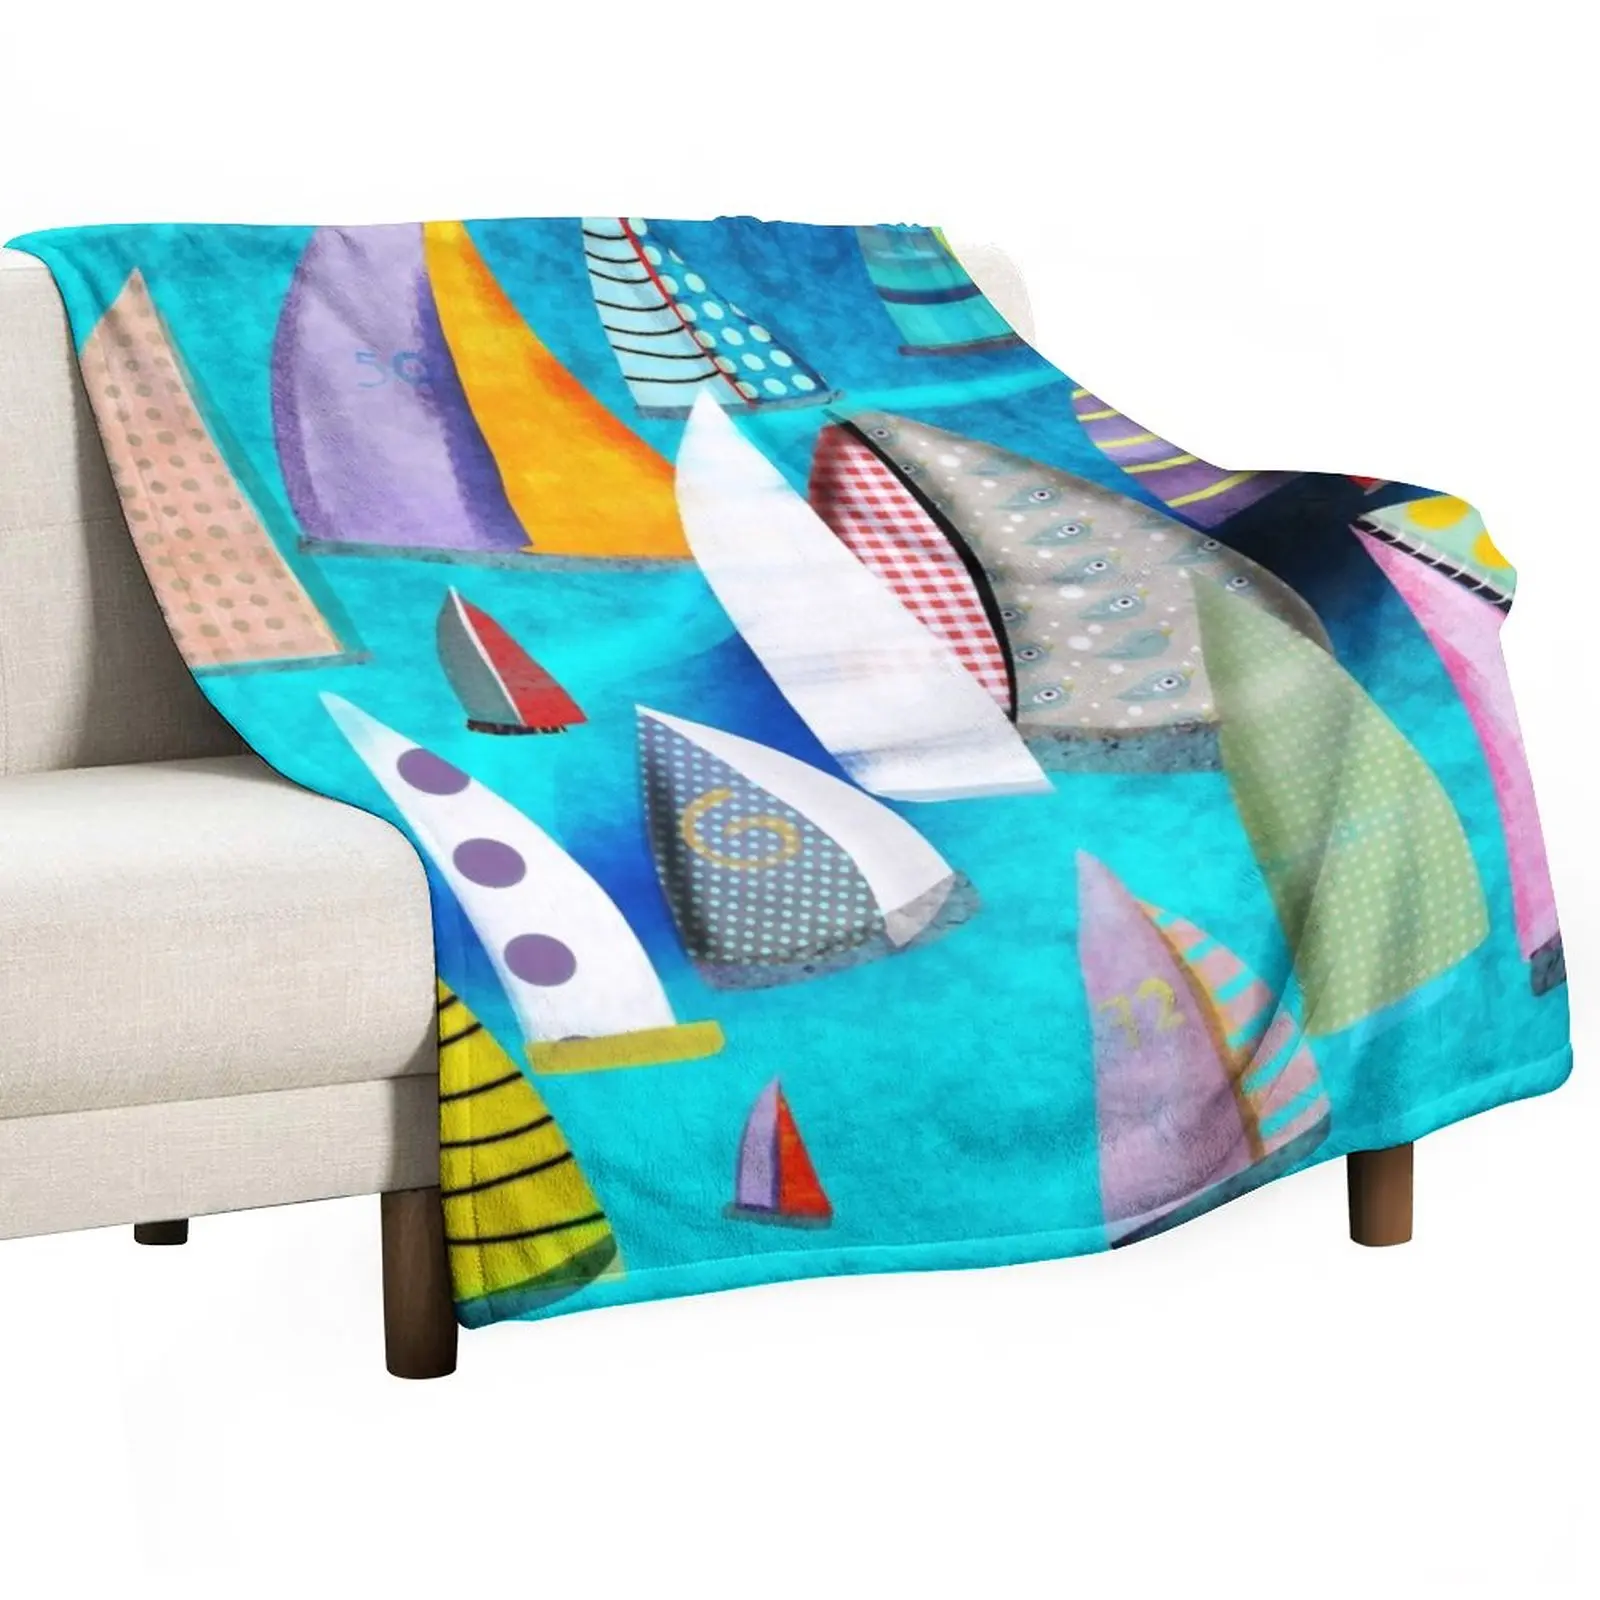 

New Regatta Segelbilder Marinemalerei Throw Blanket Winter bed blankets Stuffed Blankets